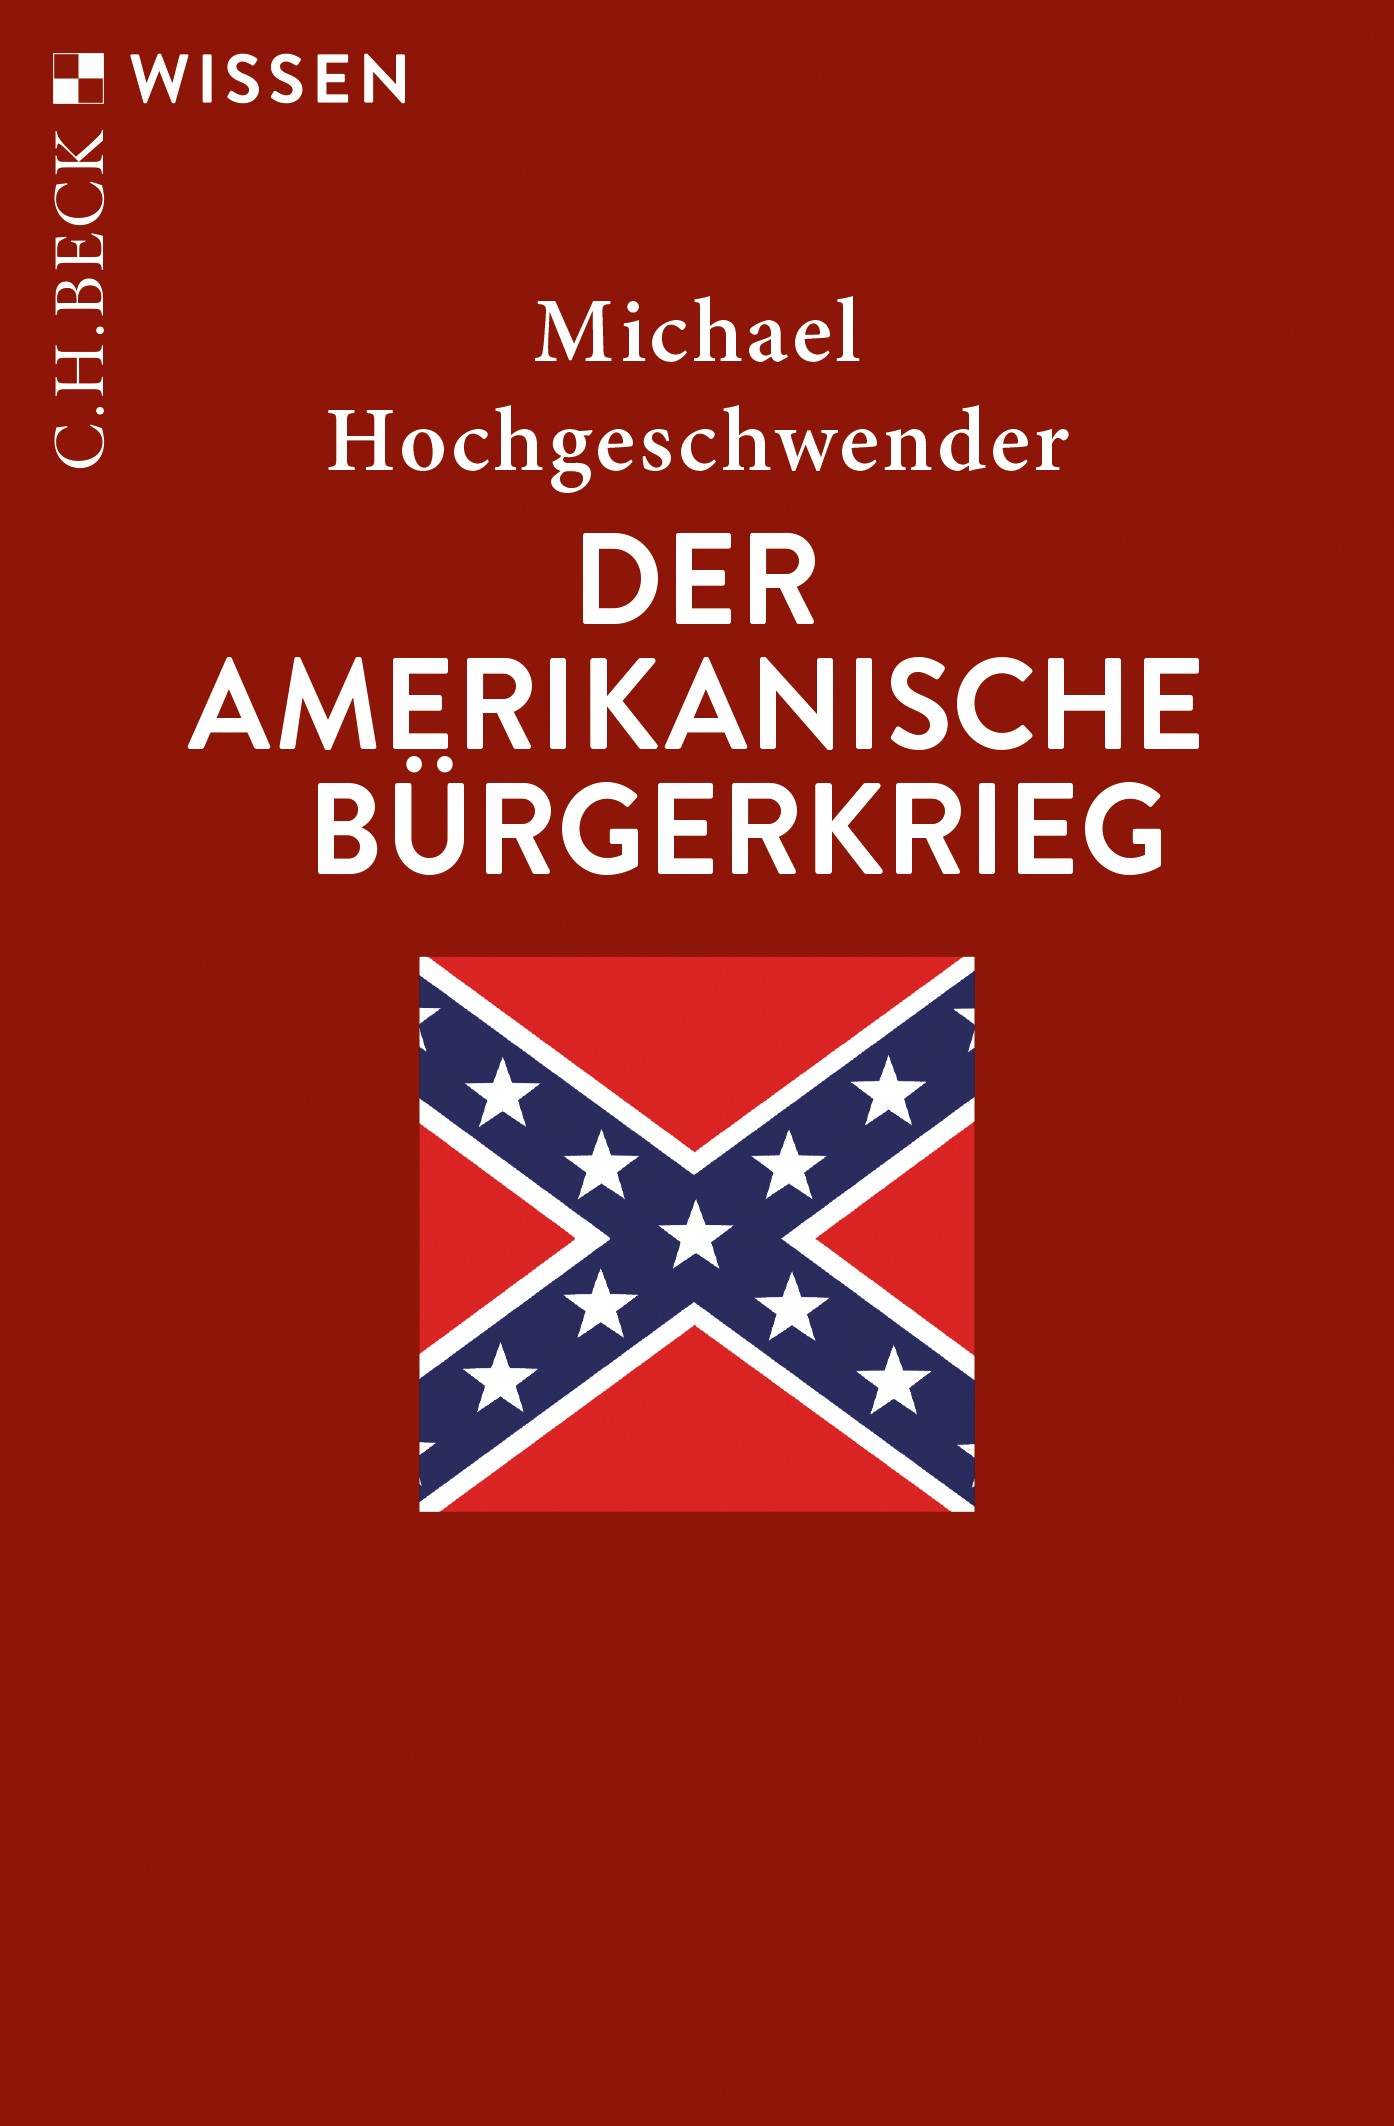 Cover: Hochgeschwender, Michael, Der amerikanische Bürgerkrieg